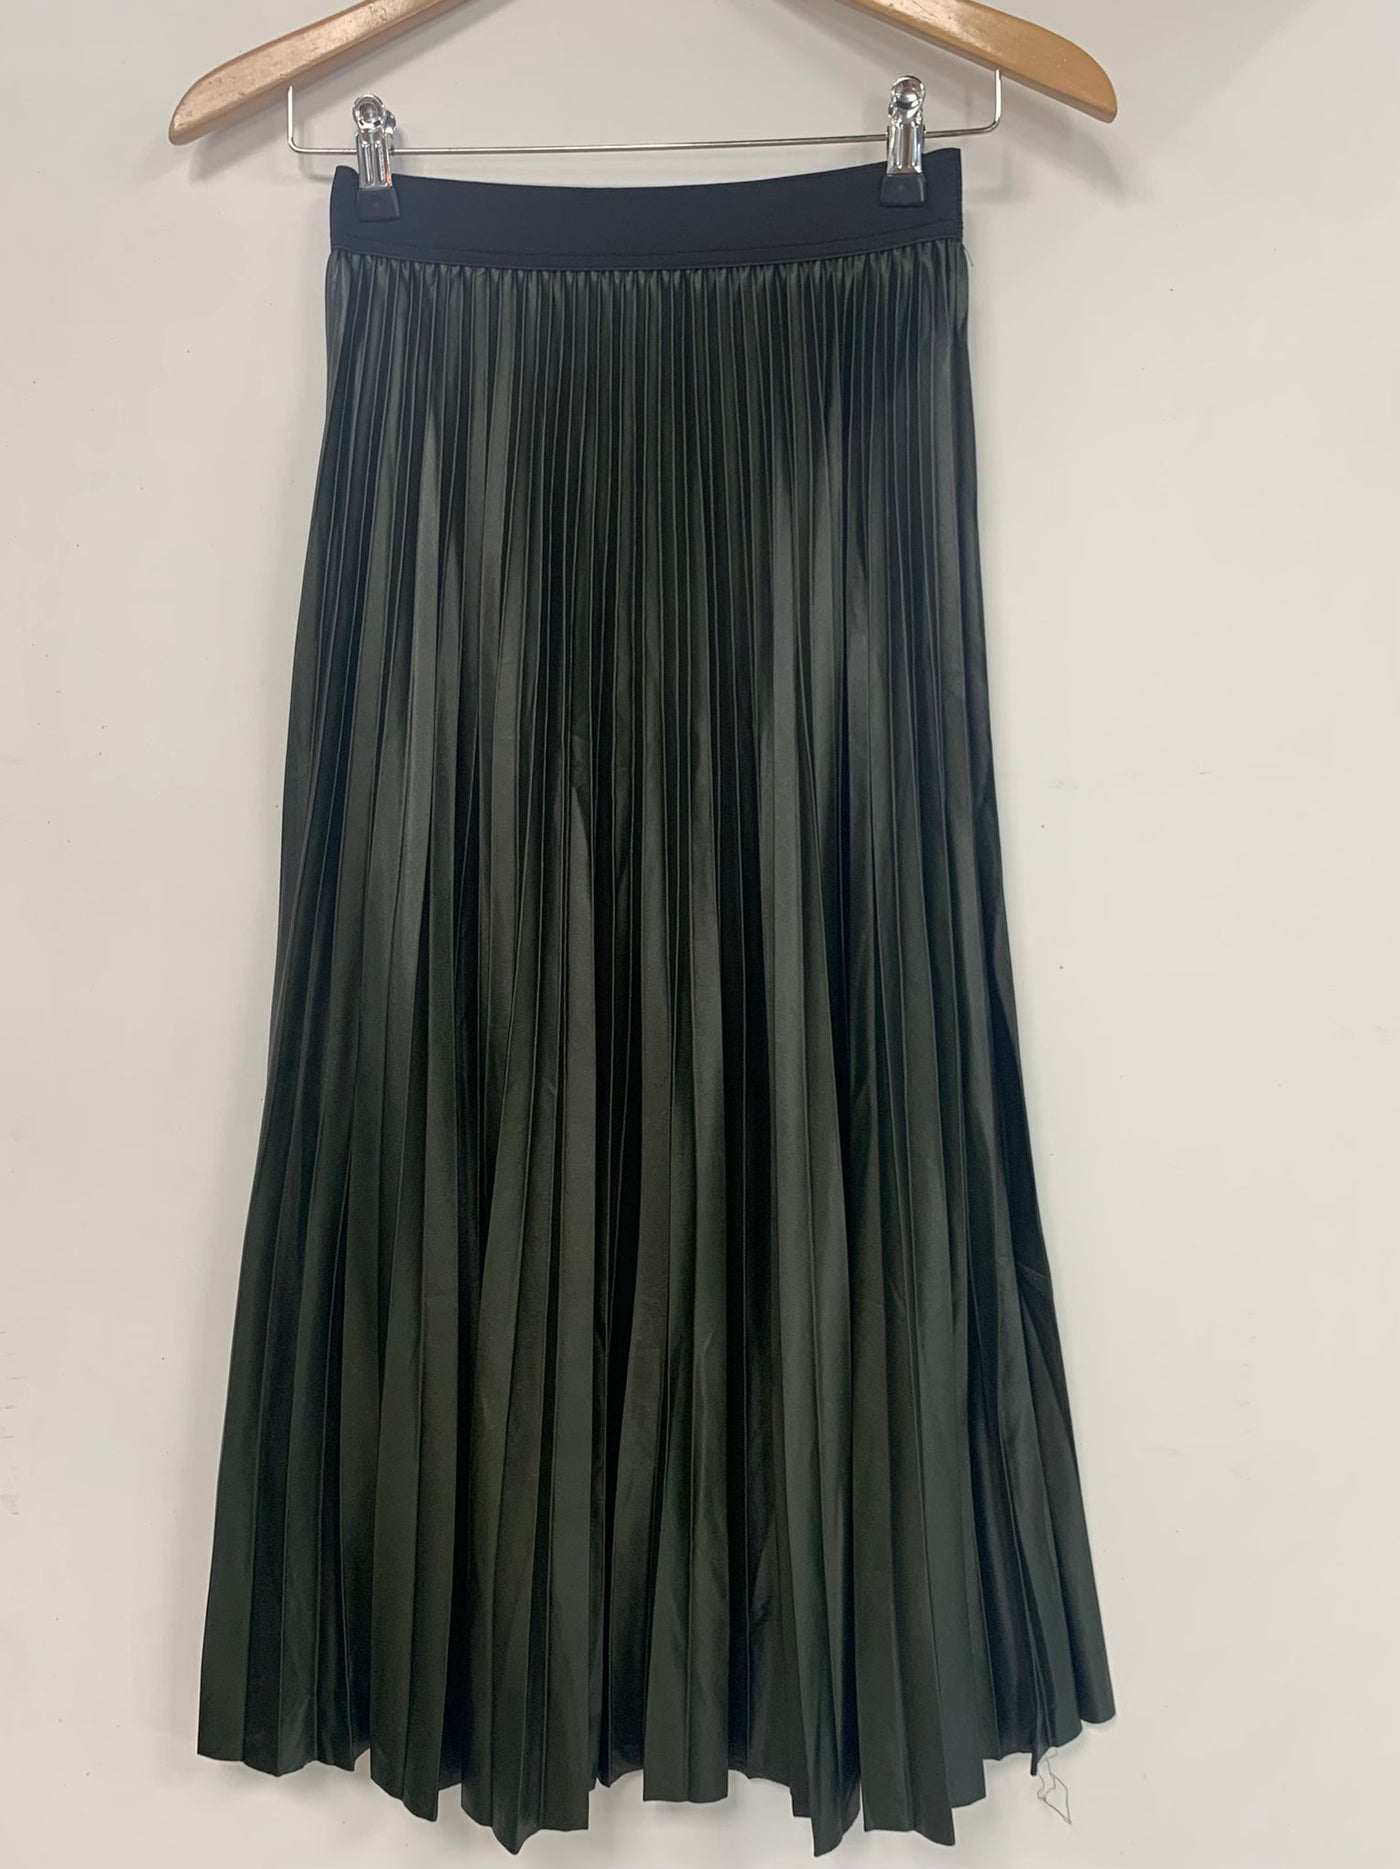 Skirt plisse  C1050 Groen